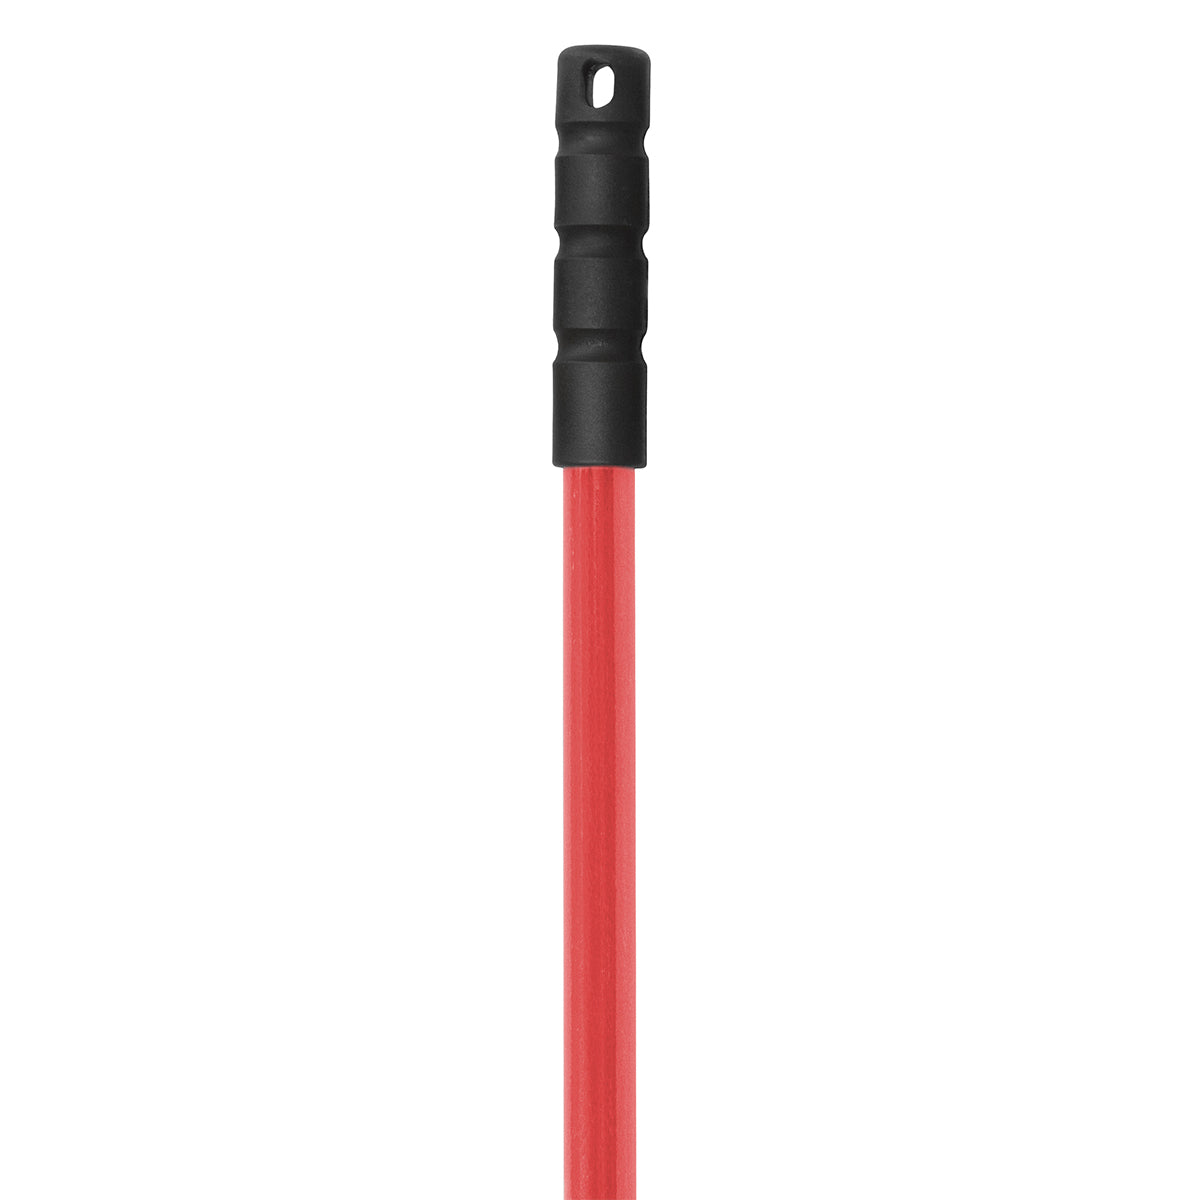 Baston de Fibra de Vidrio 1.5 Metros de Largo Color Rojo